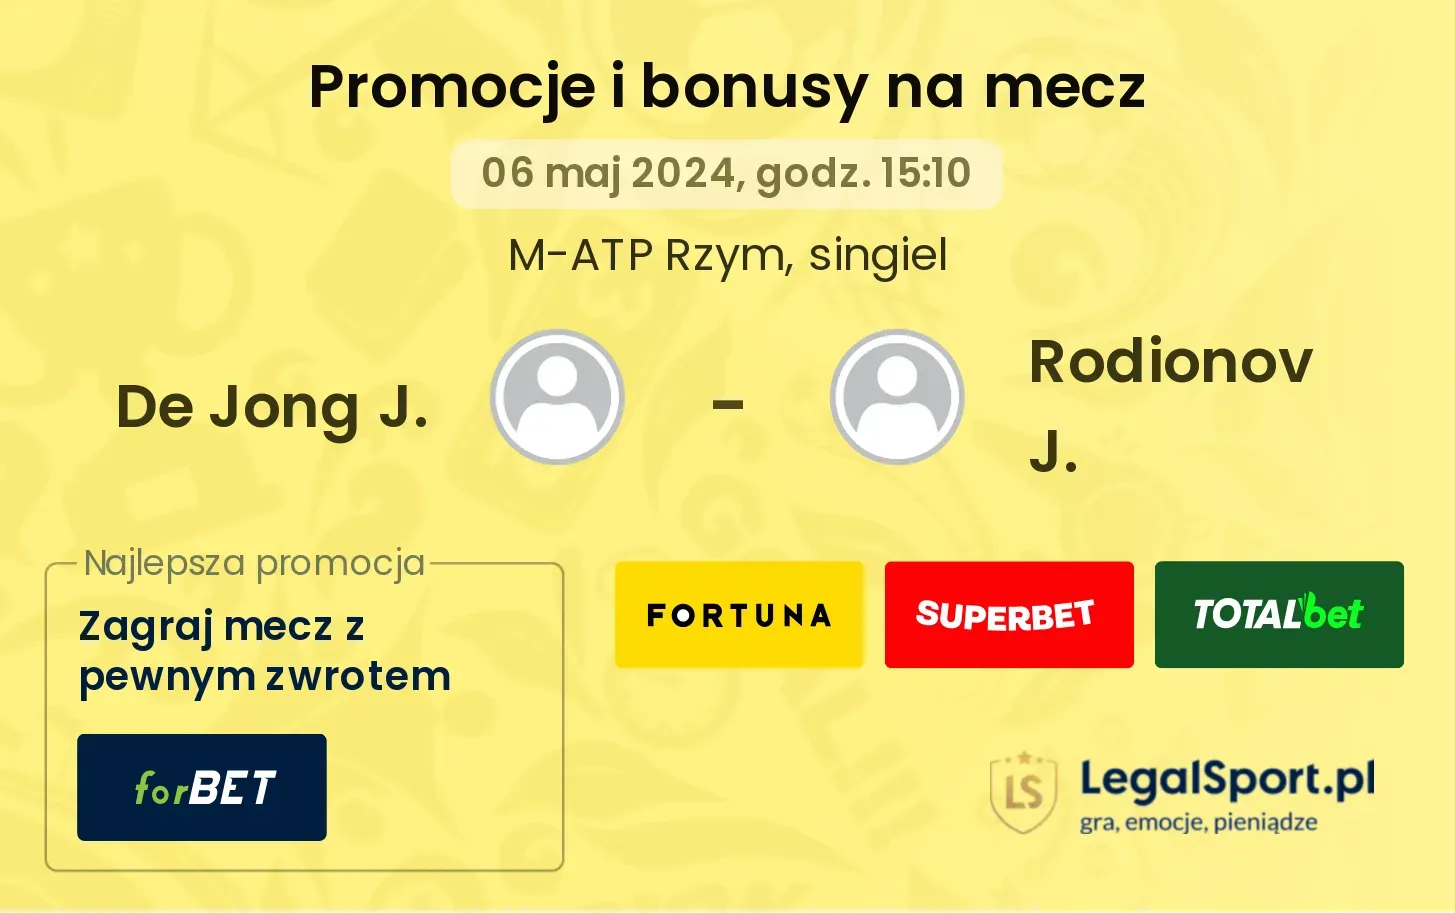 De Jong J. - Rodionov J. promocje bonusy na mecz